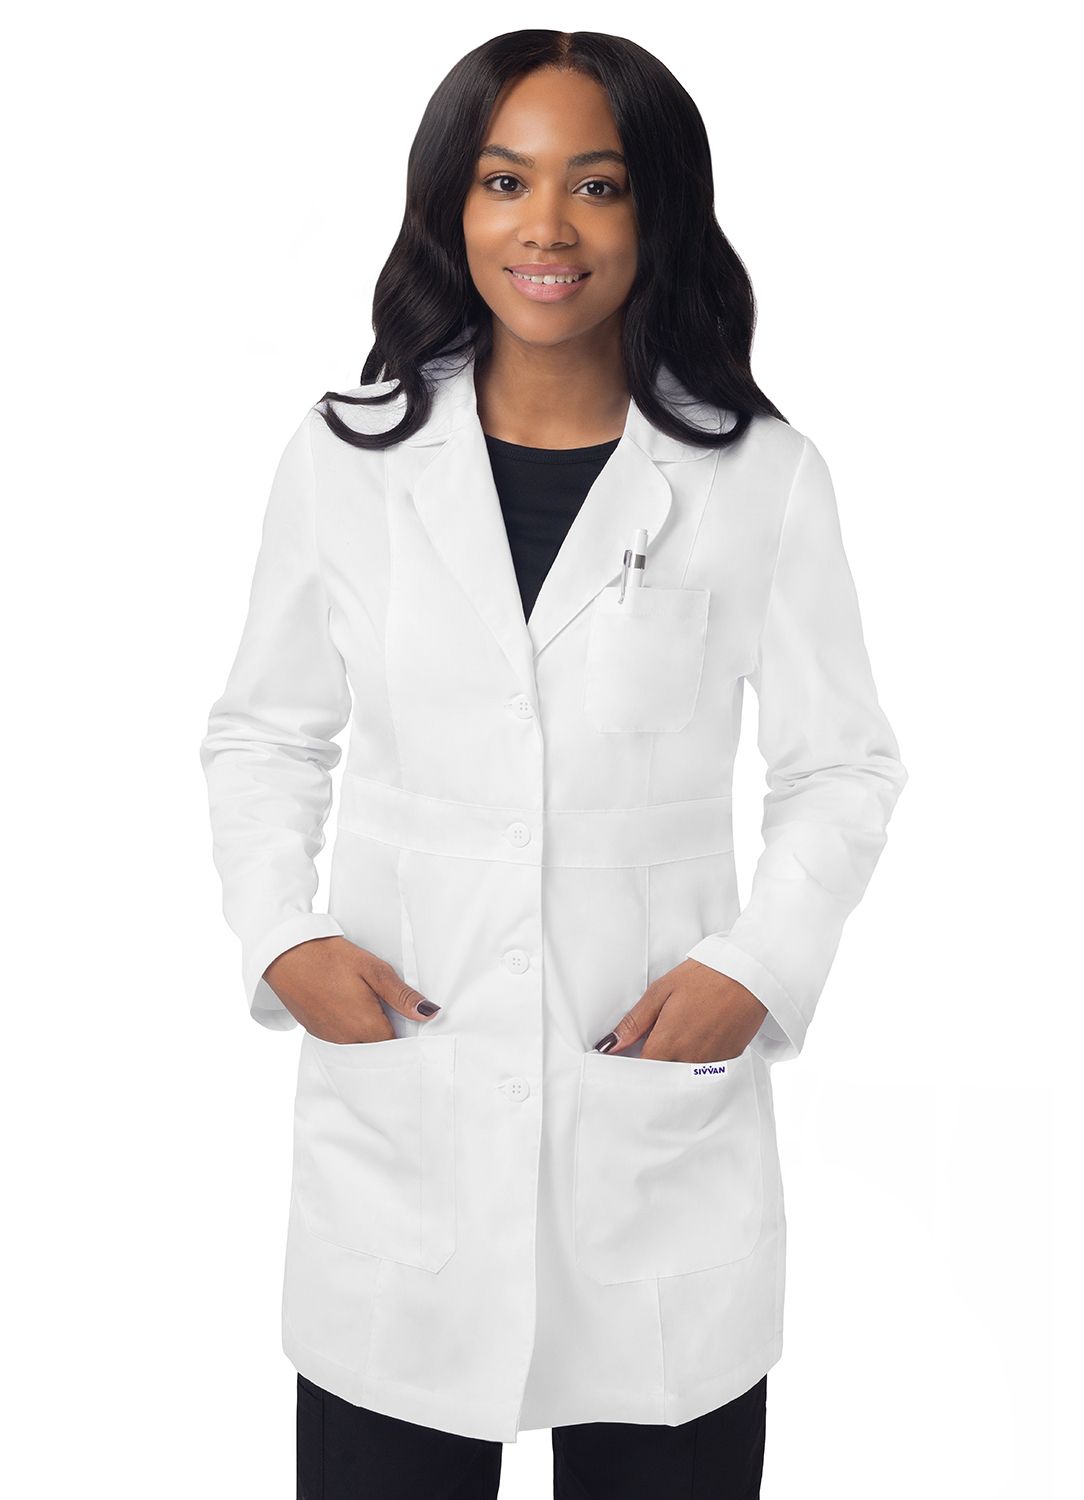 Adar 33" Women's Modern Slim Lab Coat